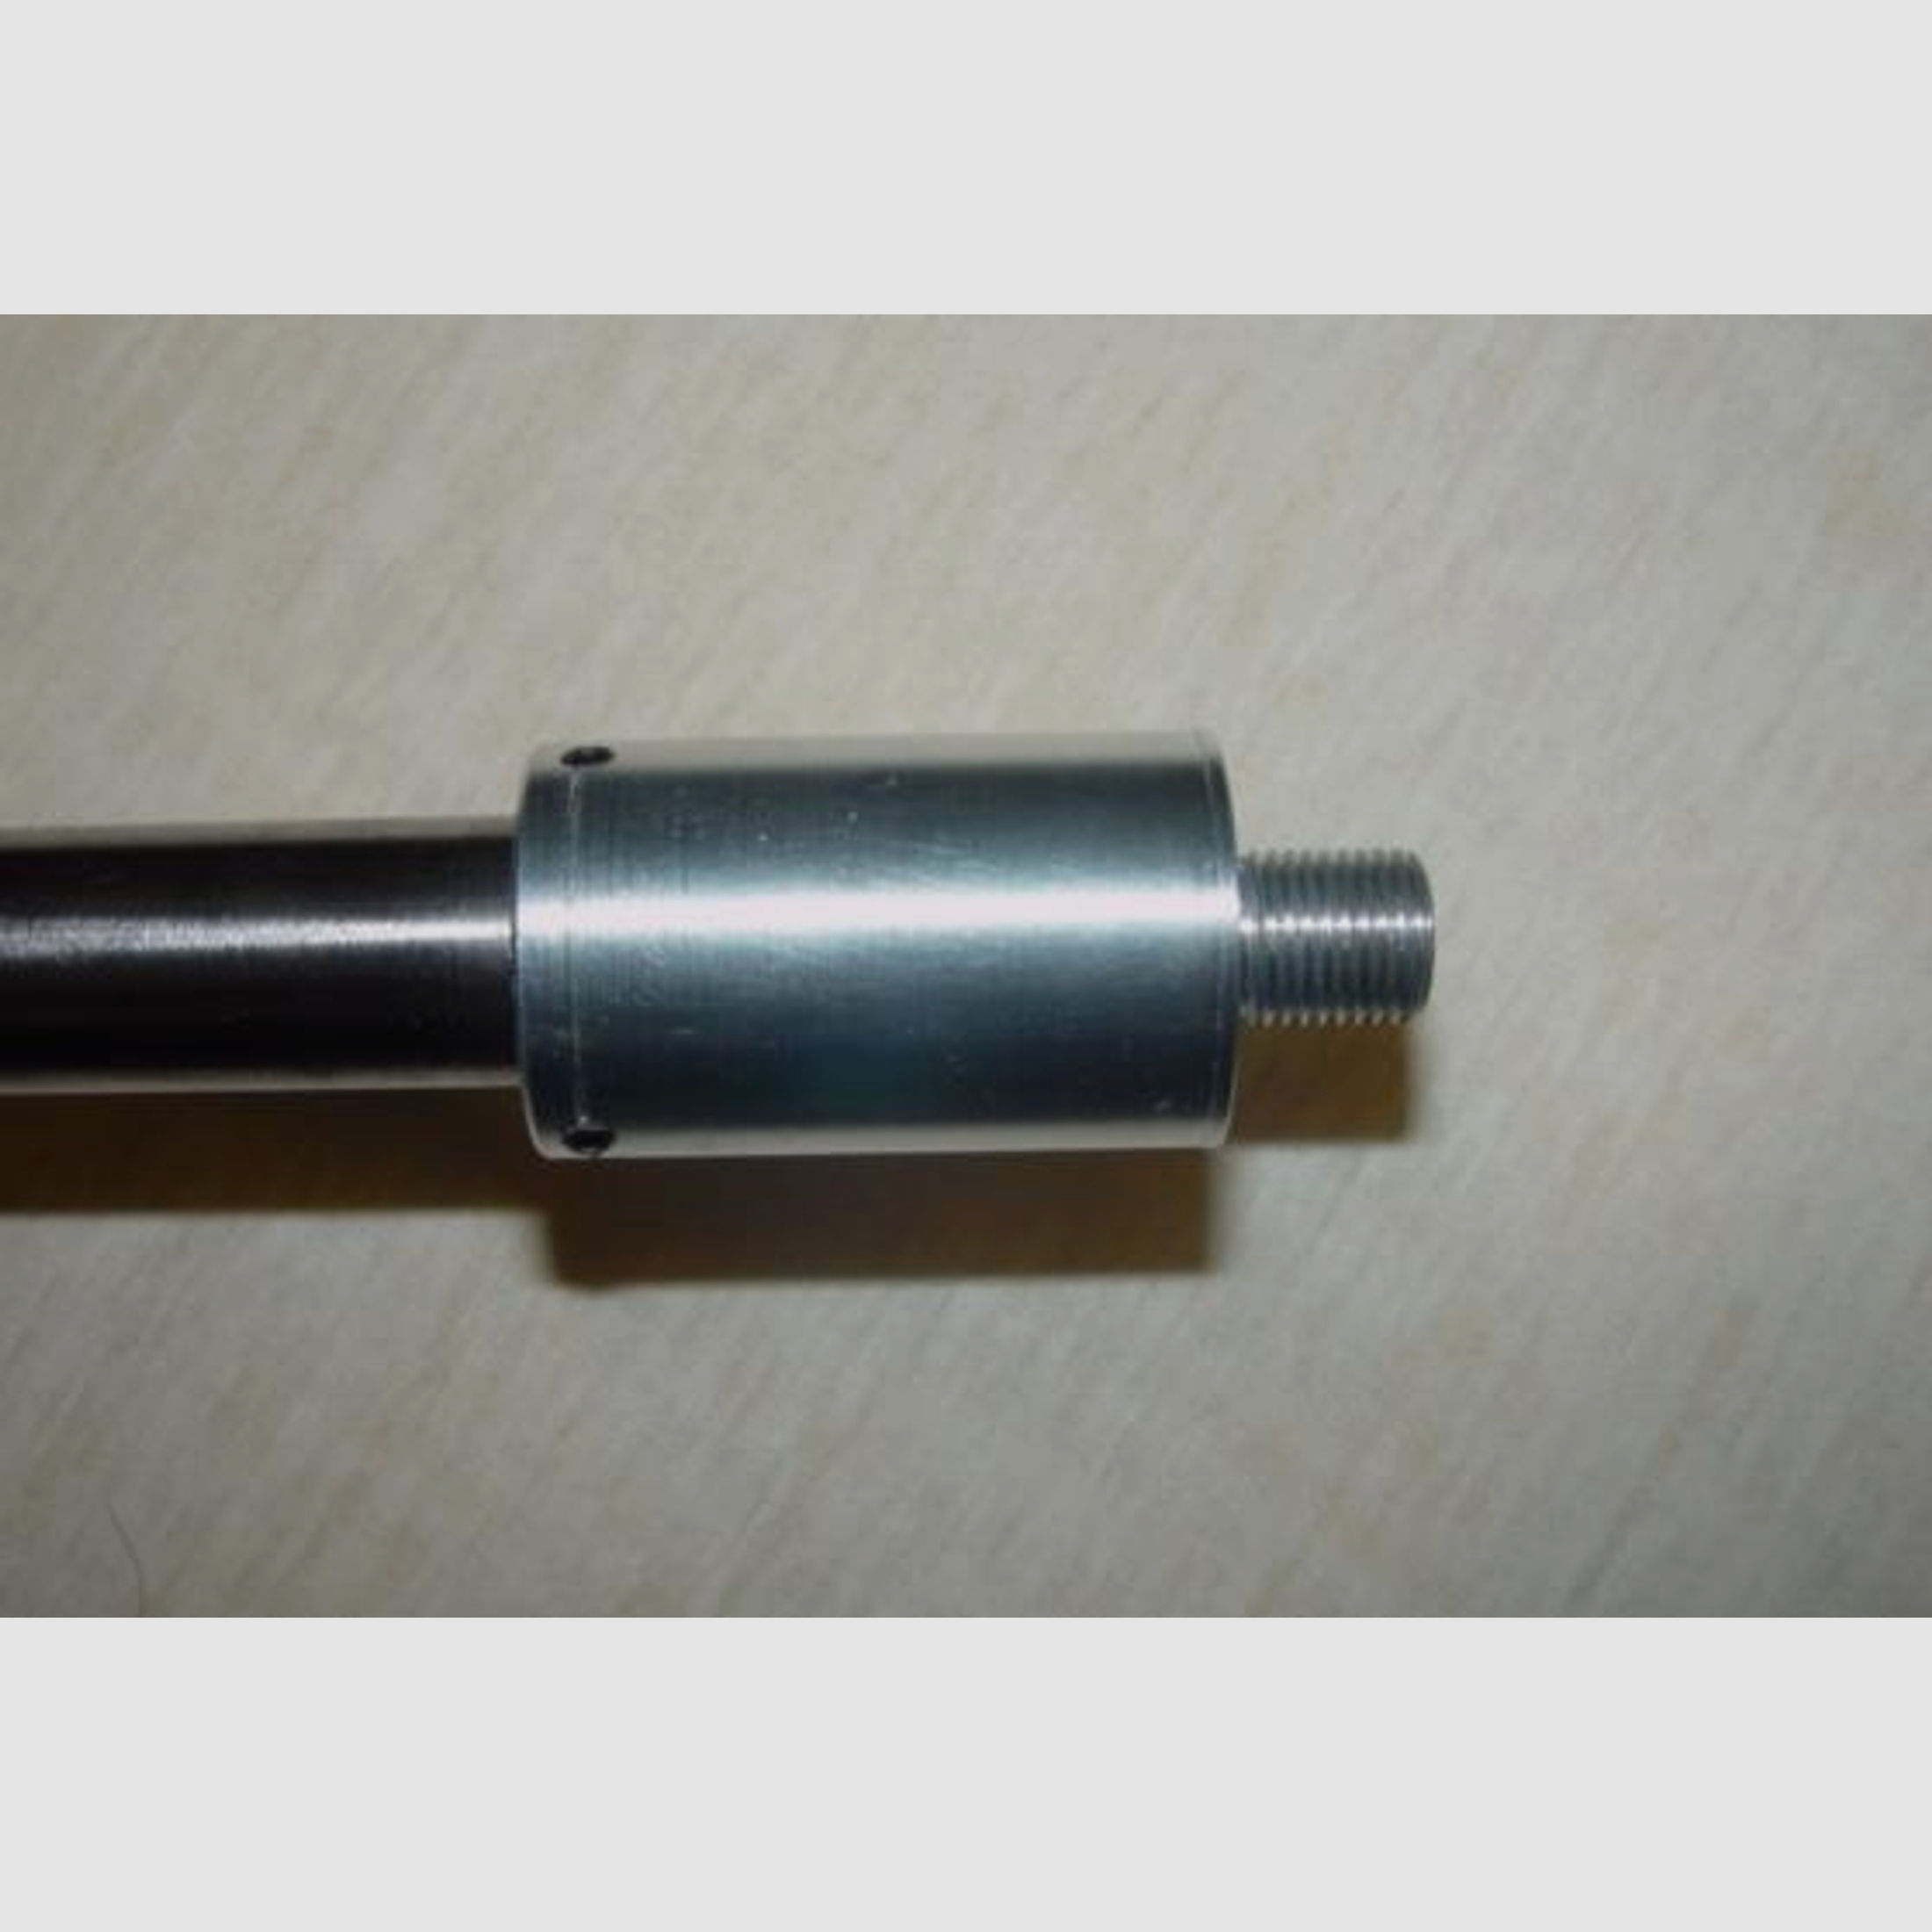 Schalldämpfer-Adapter DICK für Laufdurchmesser größer als 14mm (z.B. Anschütz/Walther Match-KK)